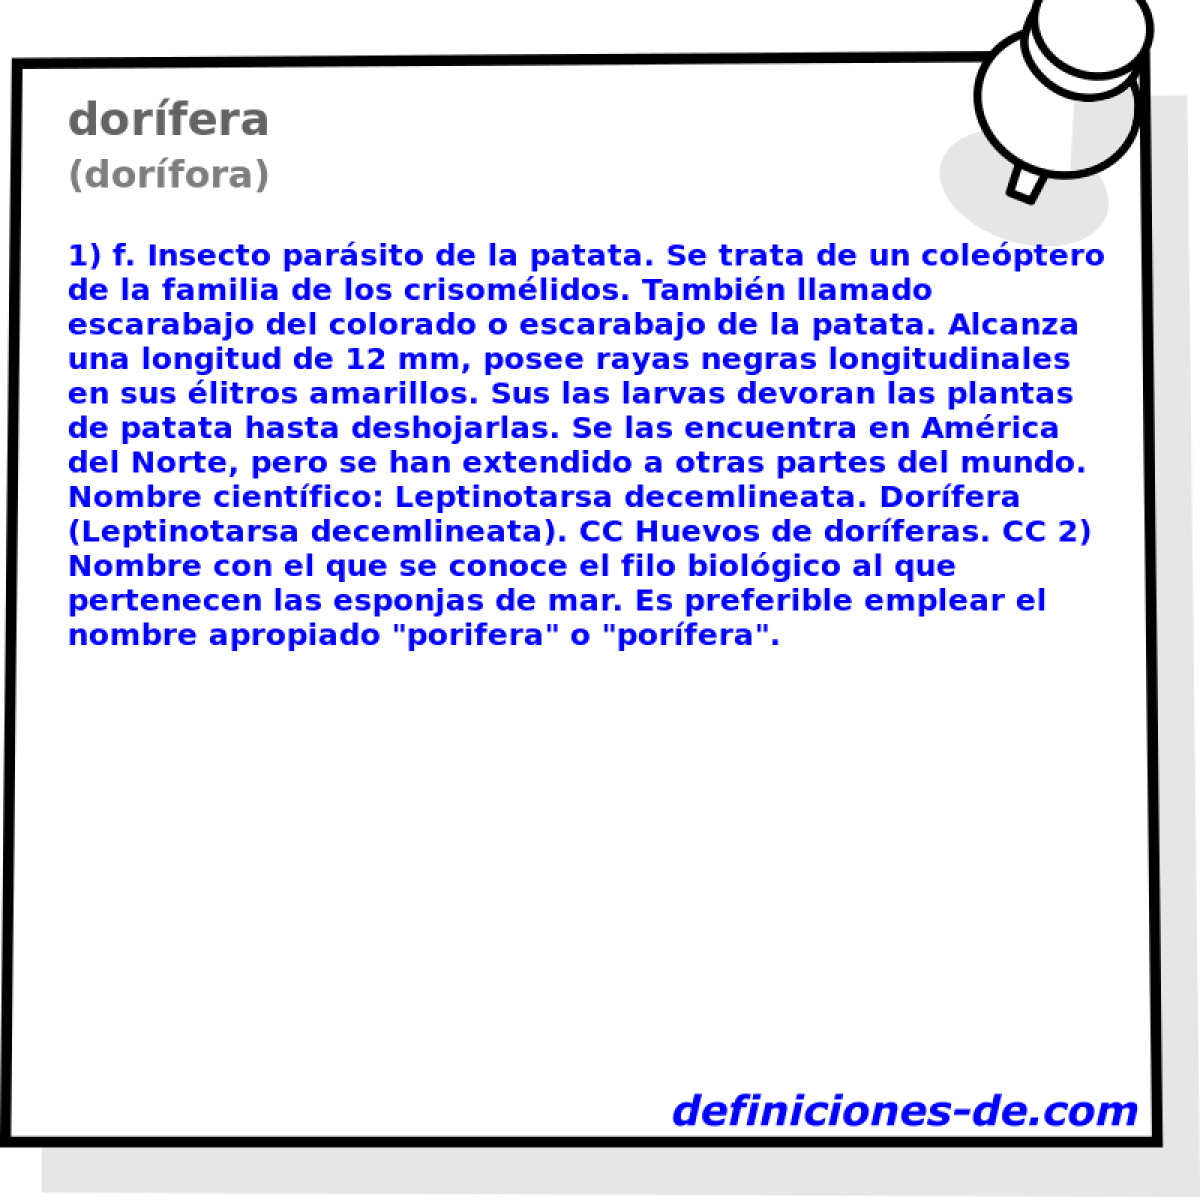 dorfera (dorfora)